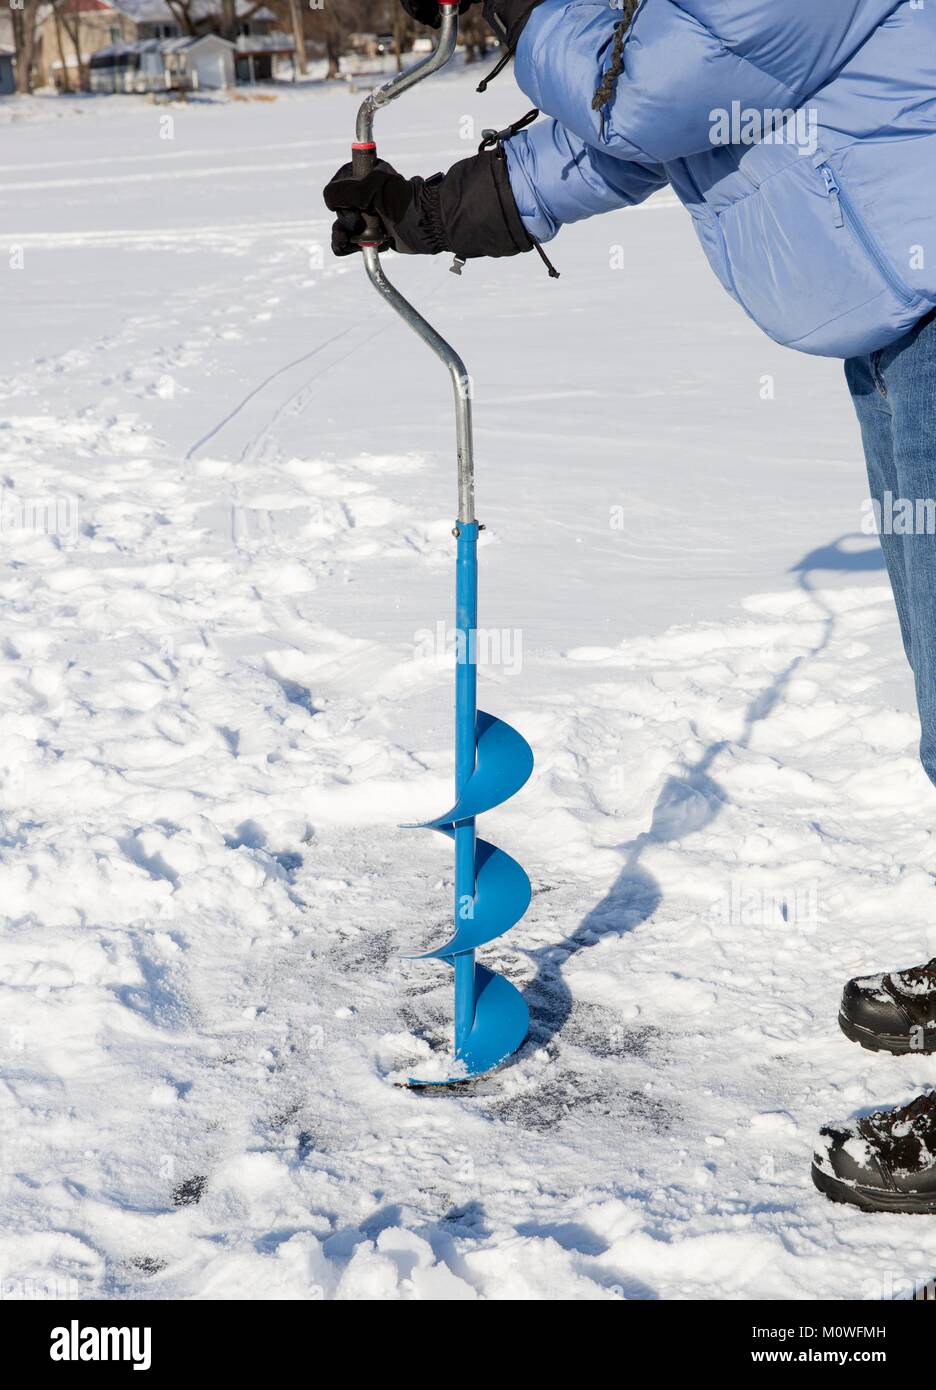 Una persona la perforación de un agujero en el hielo de un lago congelado utilizando un hielo auguer (un tornillo helicoidal blade). Foto de stock